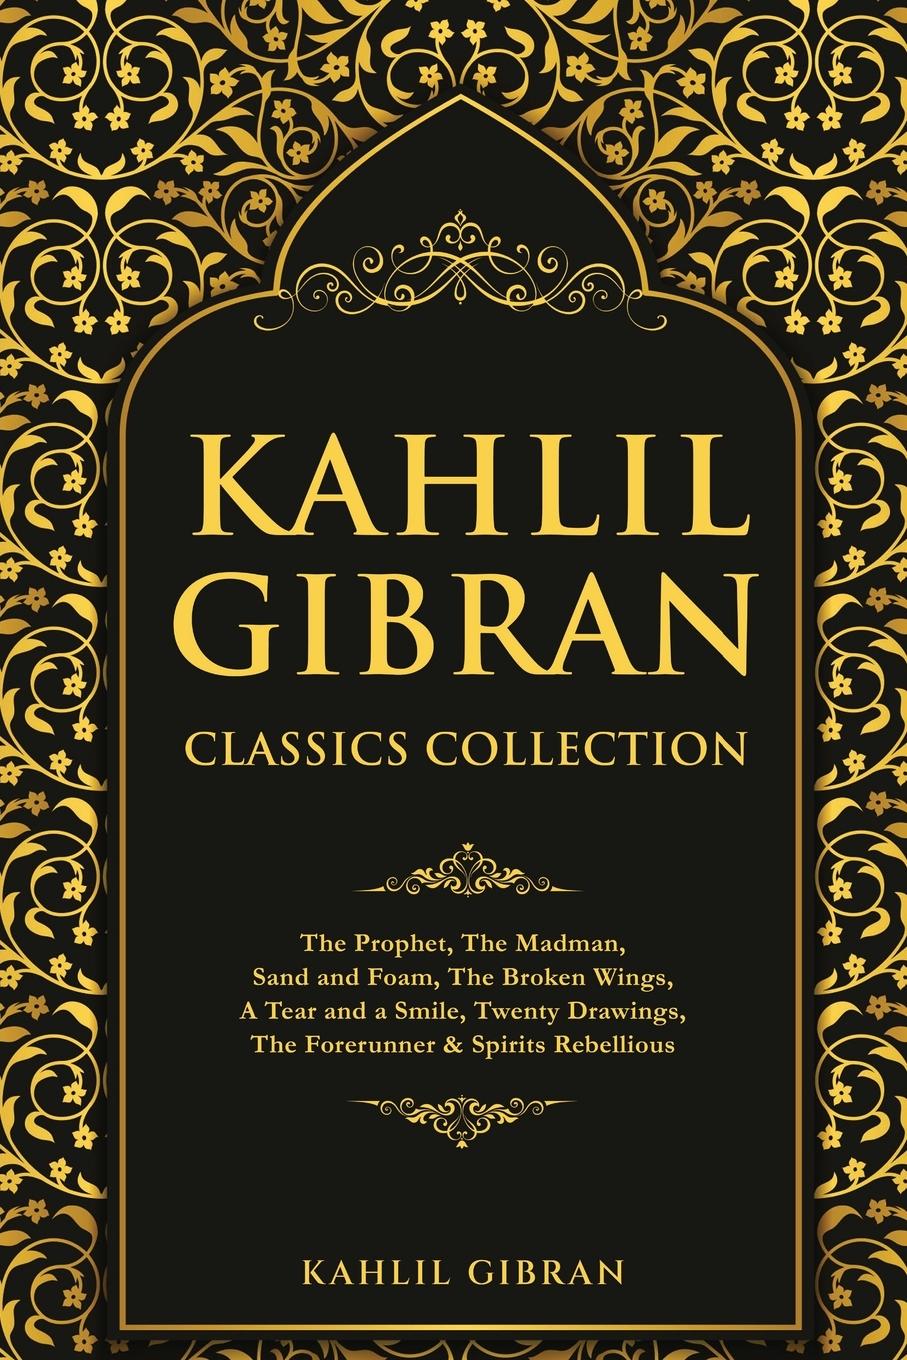 Carte Kahlil Gibran Classics Collection 